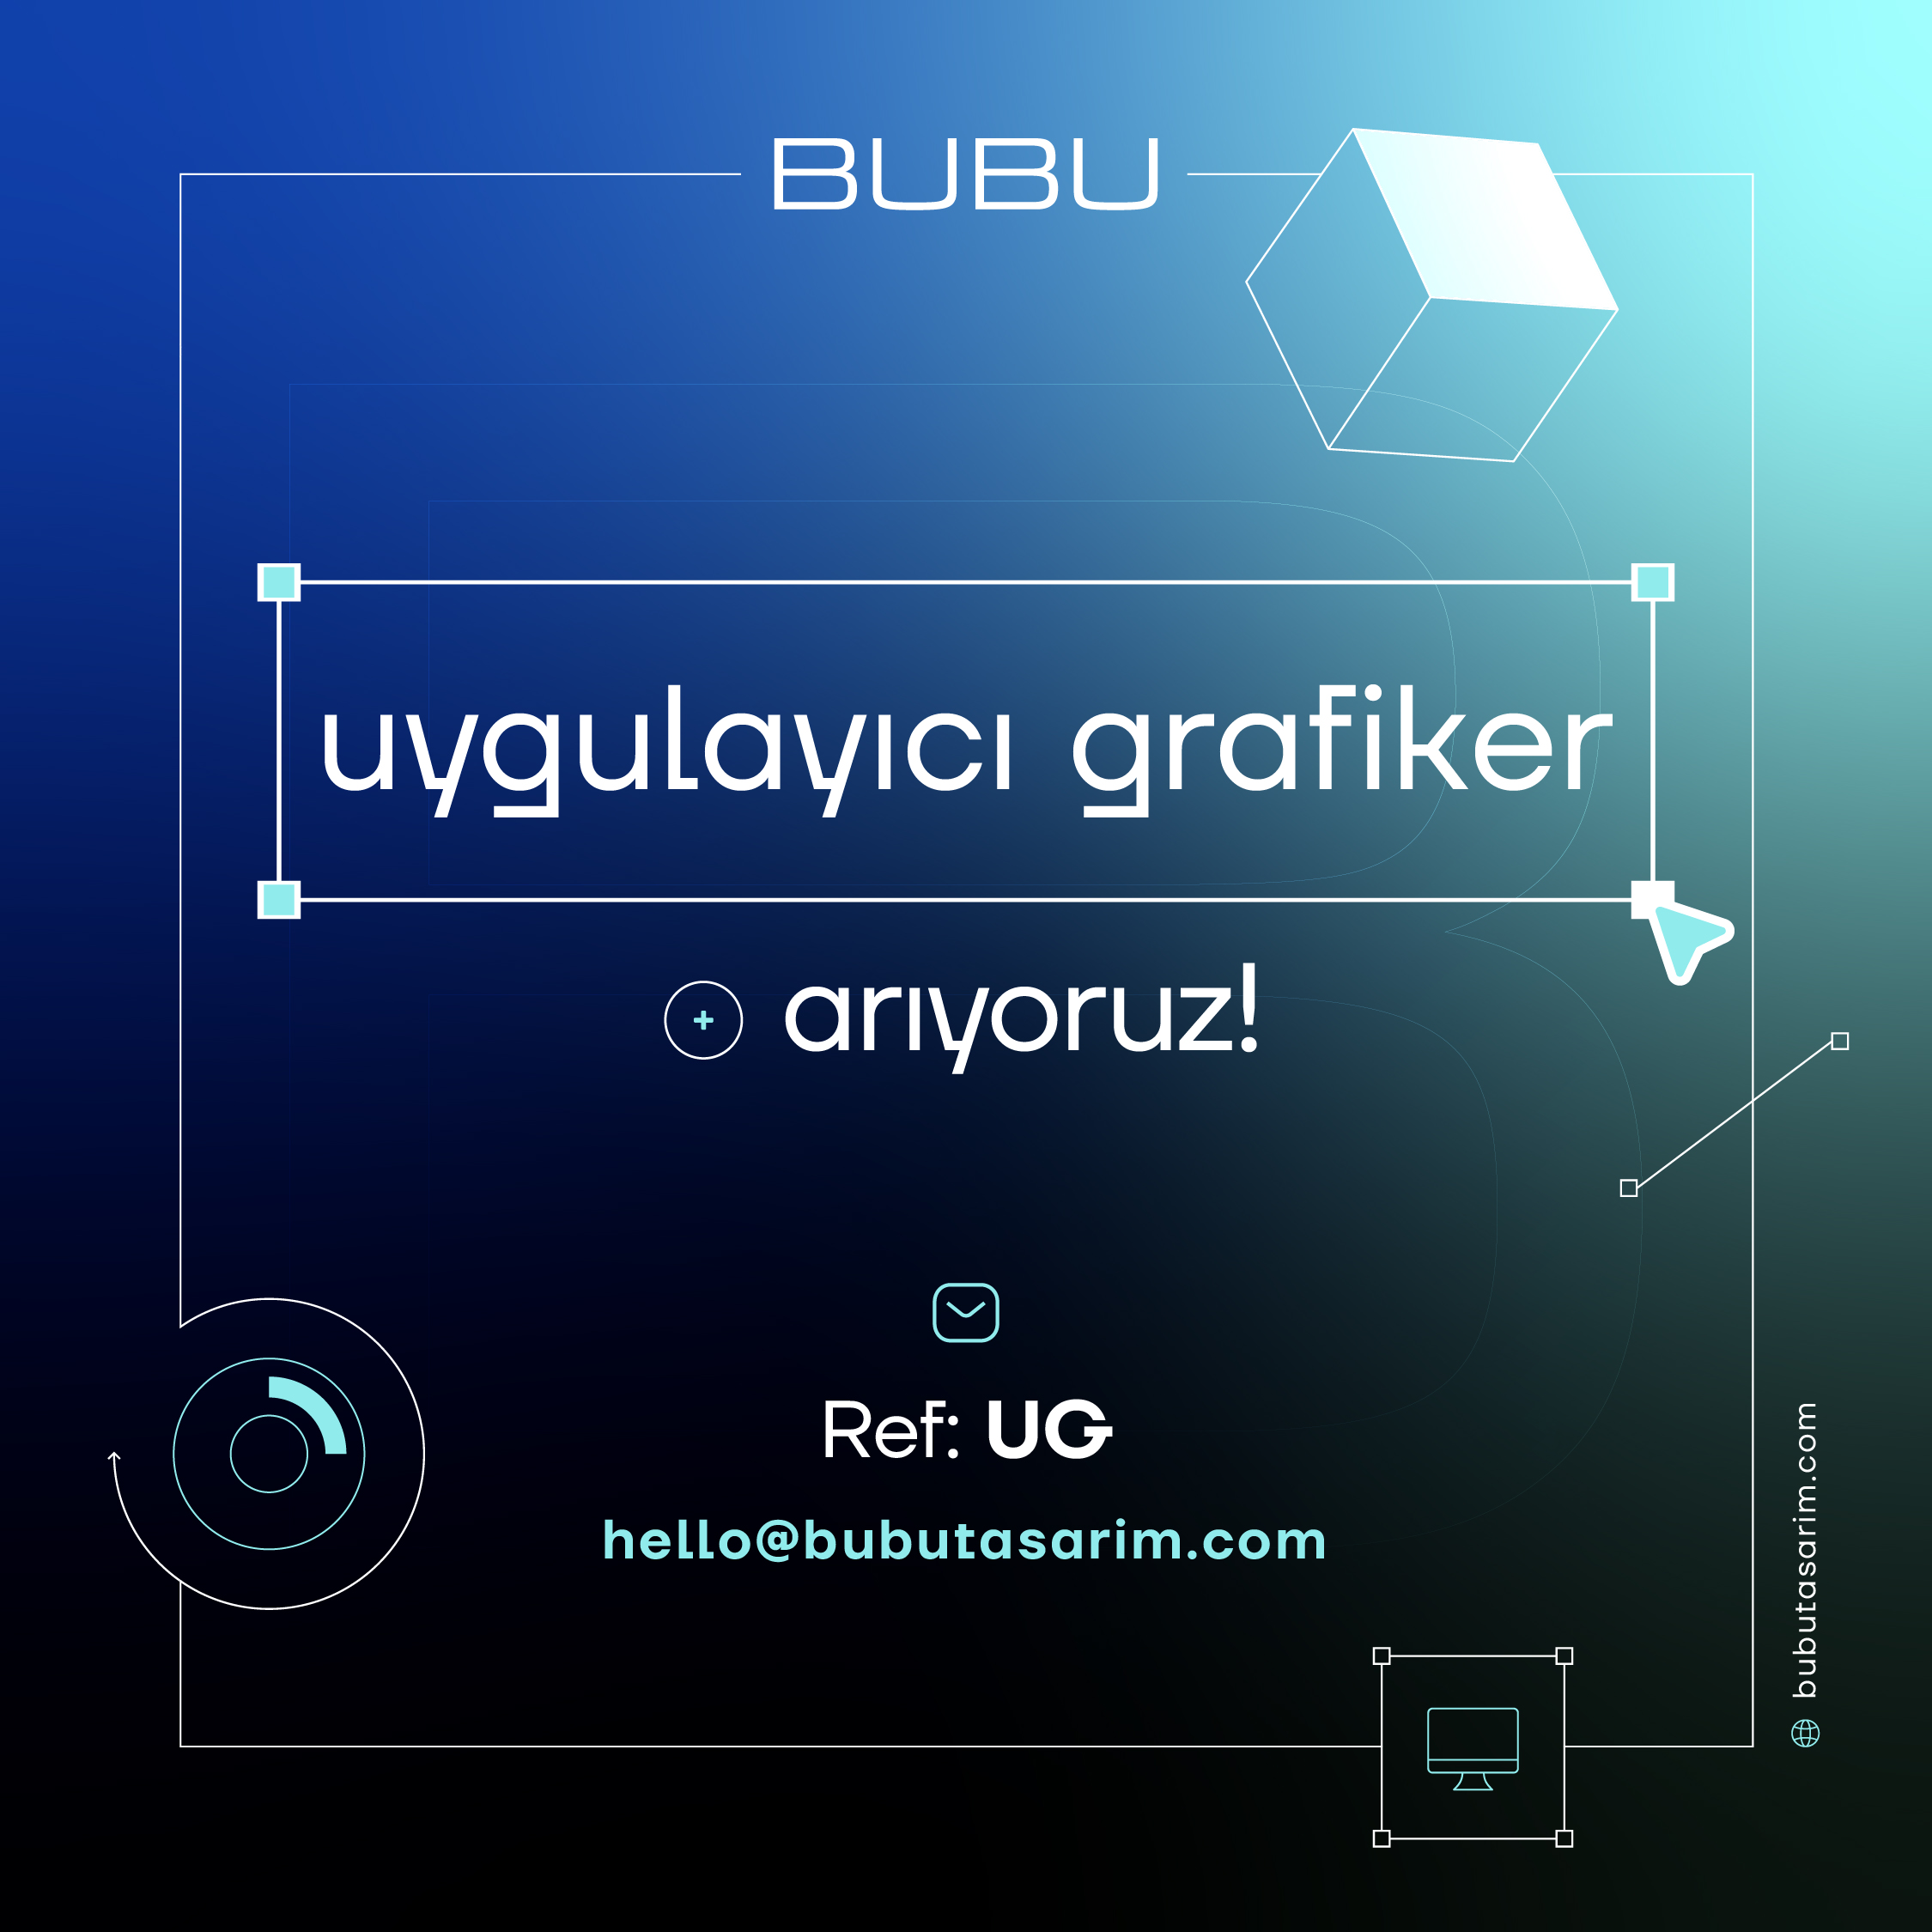 BUBU Uygulayıcı Grafiker arıyor!